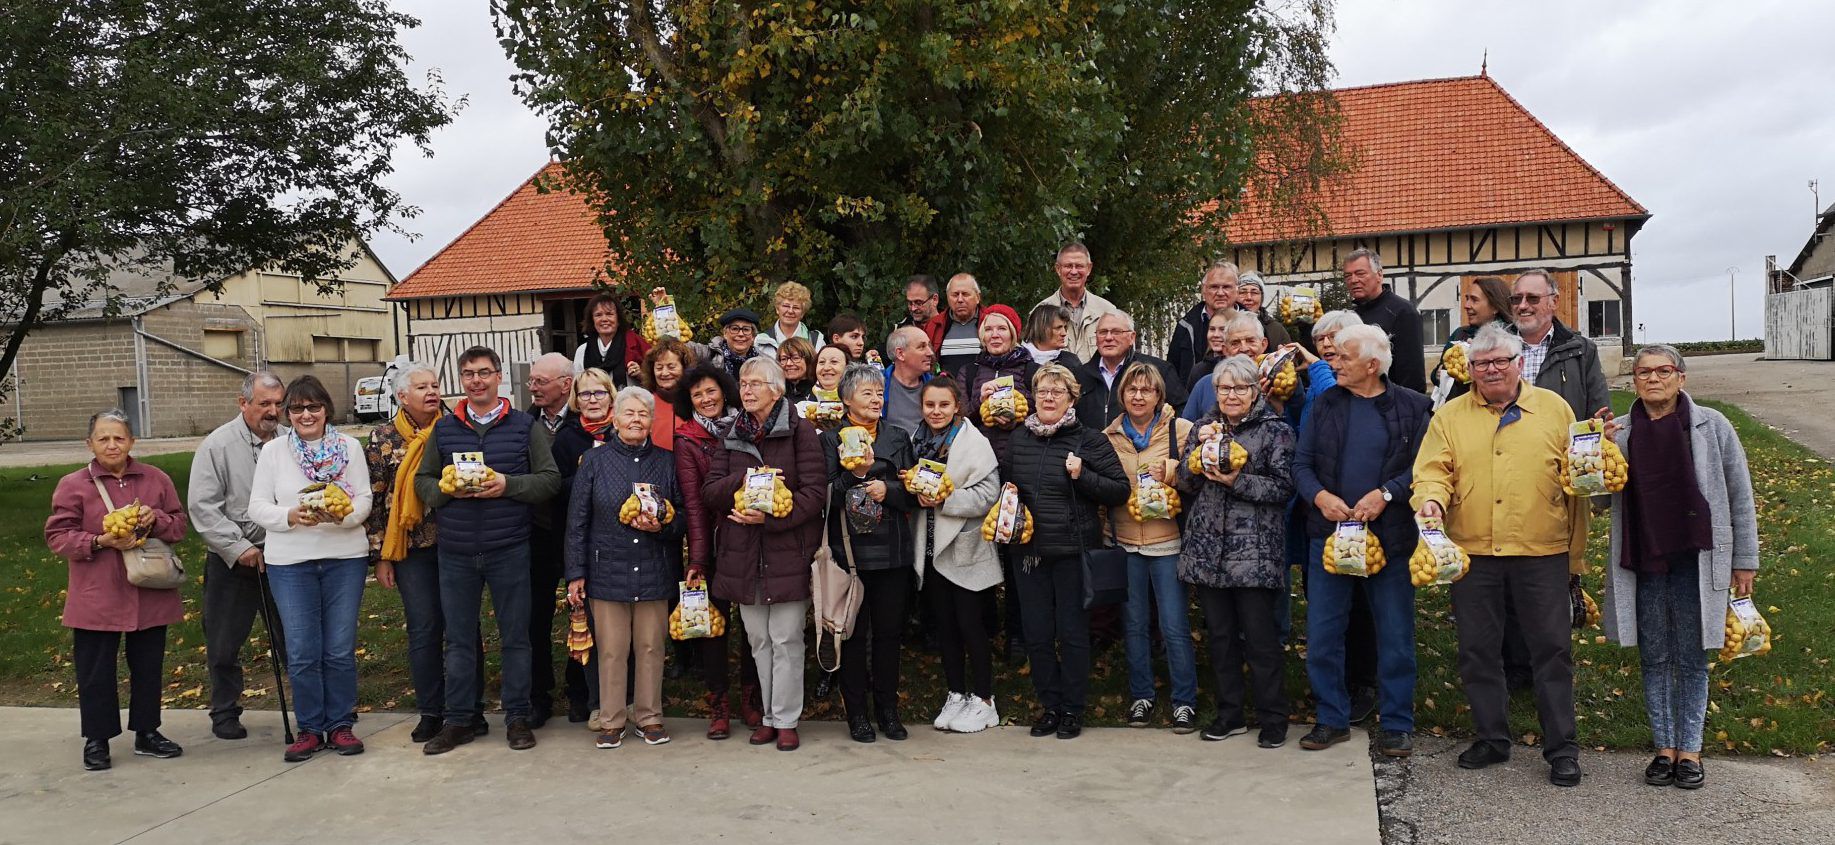 Das Bild zeigt den Großteil der Besuchergruppe beim Besuch des Kartoffelanbaubetriebs in Le Neubourg. Foto: privat)